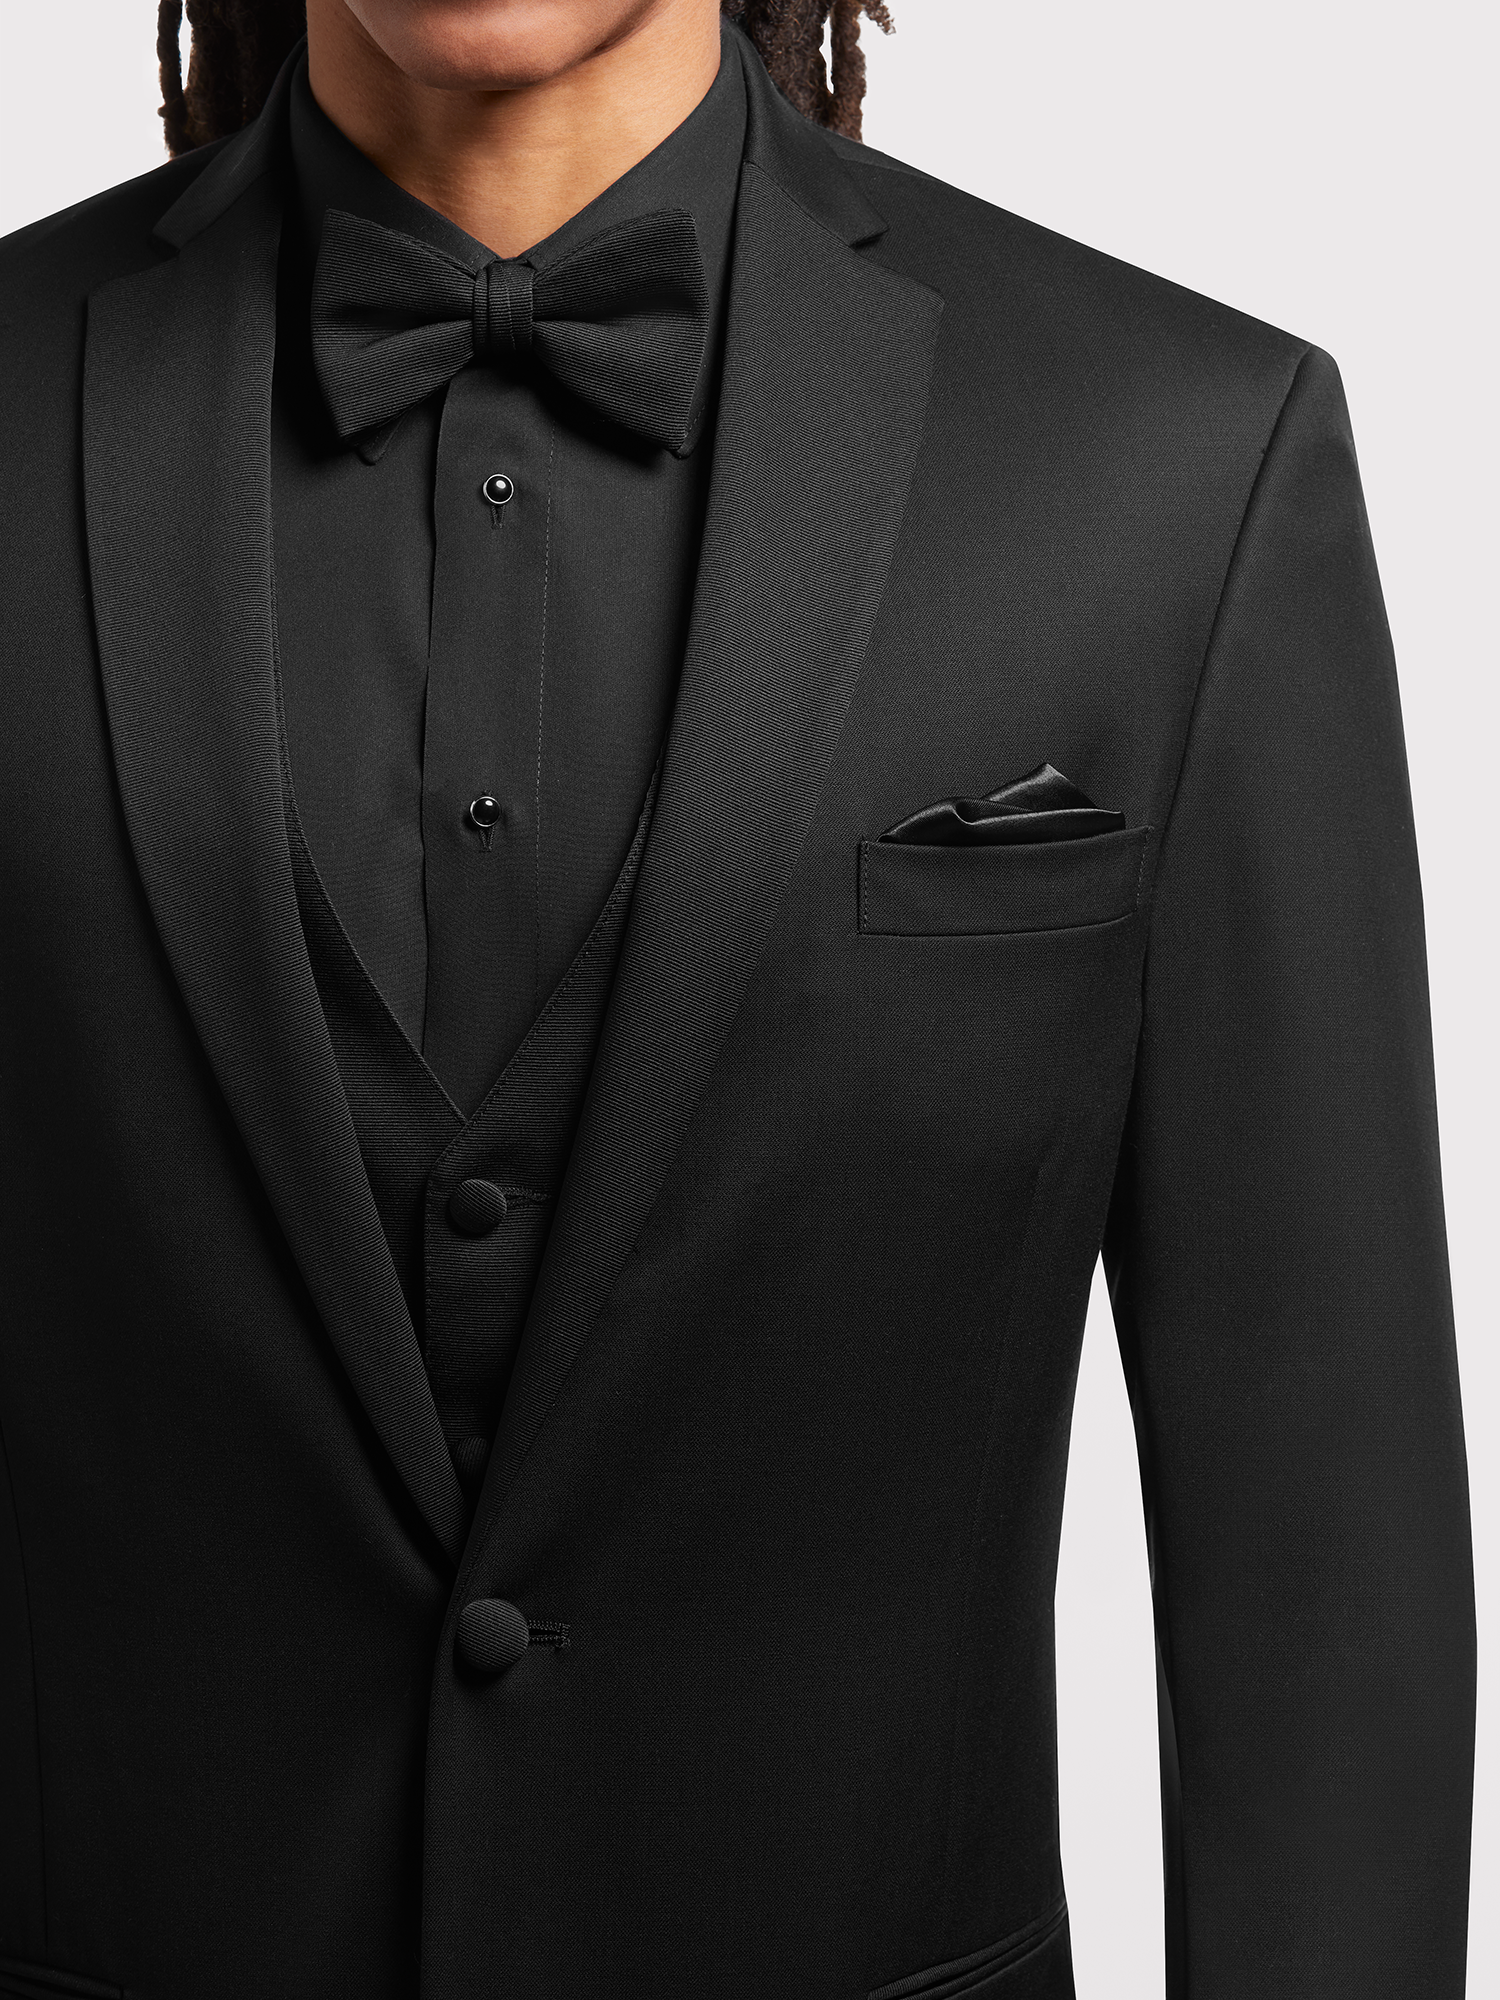 Black Tuxedo, BLACK by Vera Wang Tuxedo